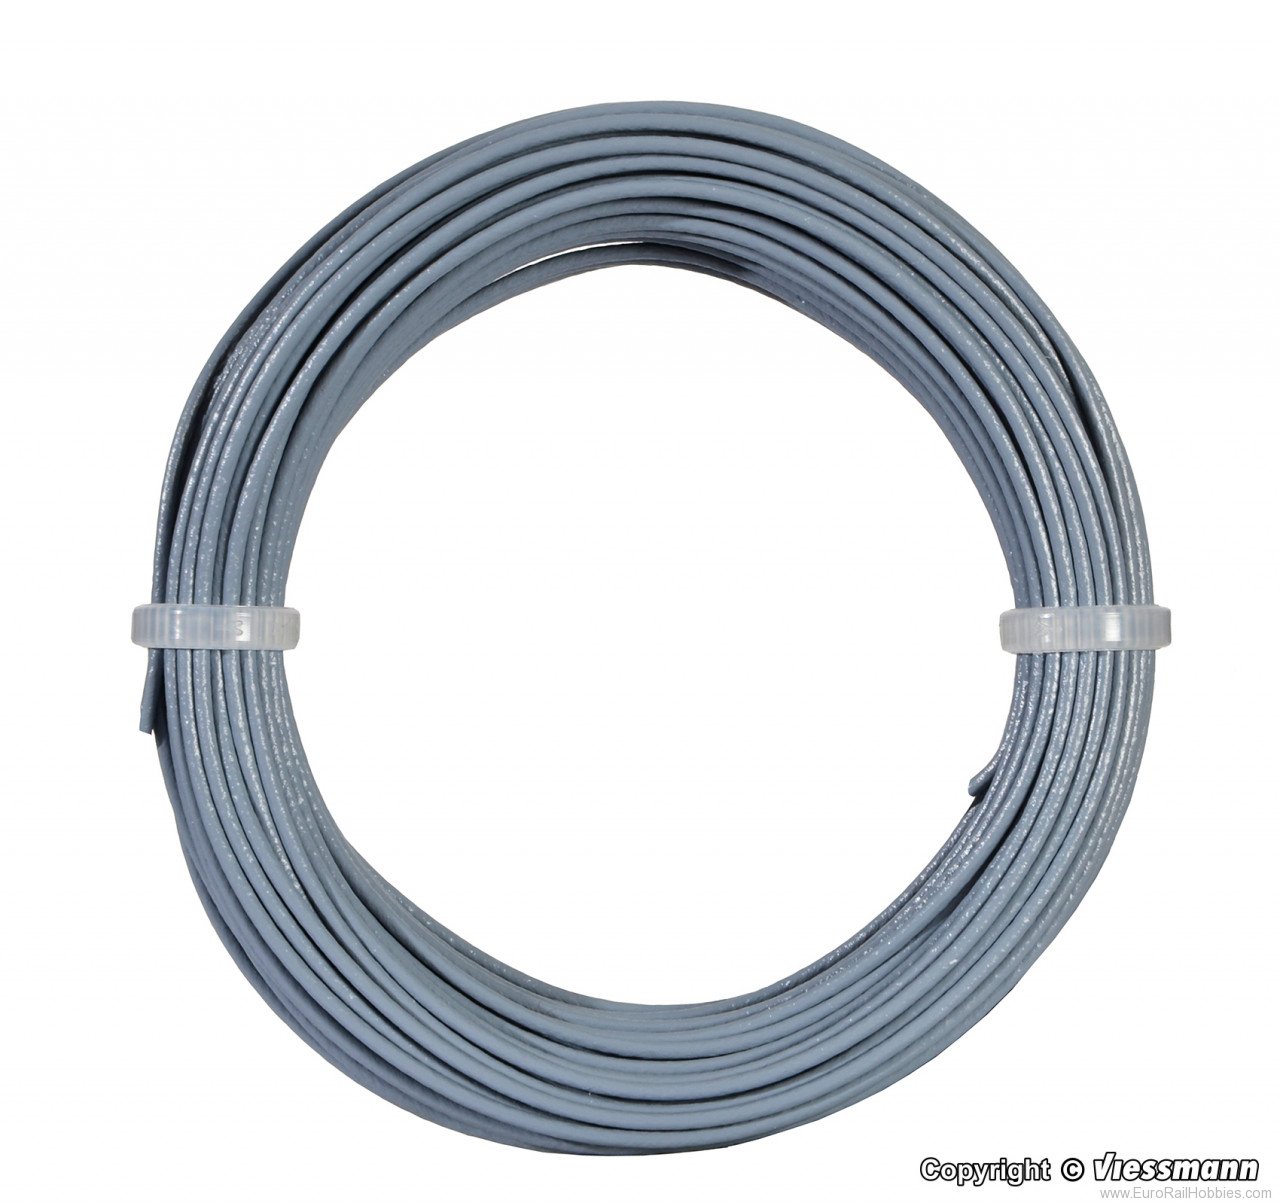 Viessmann 6868 Wire,0,14 mm dia., grey, 10 m